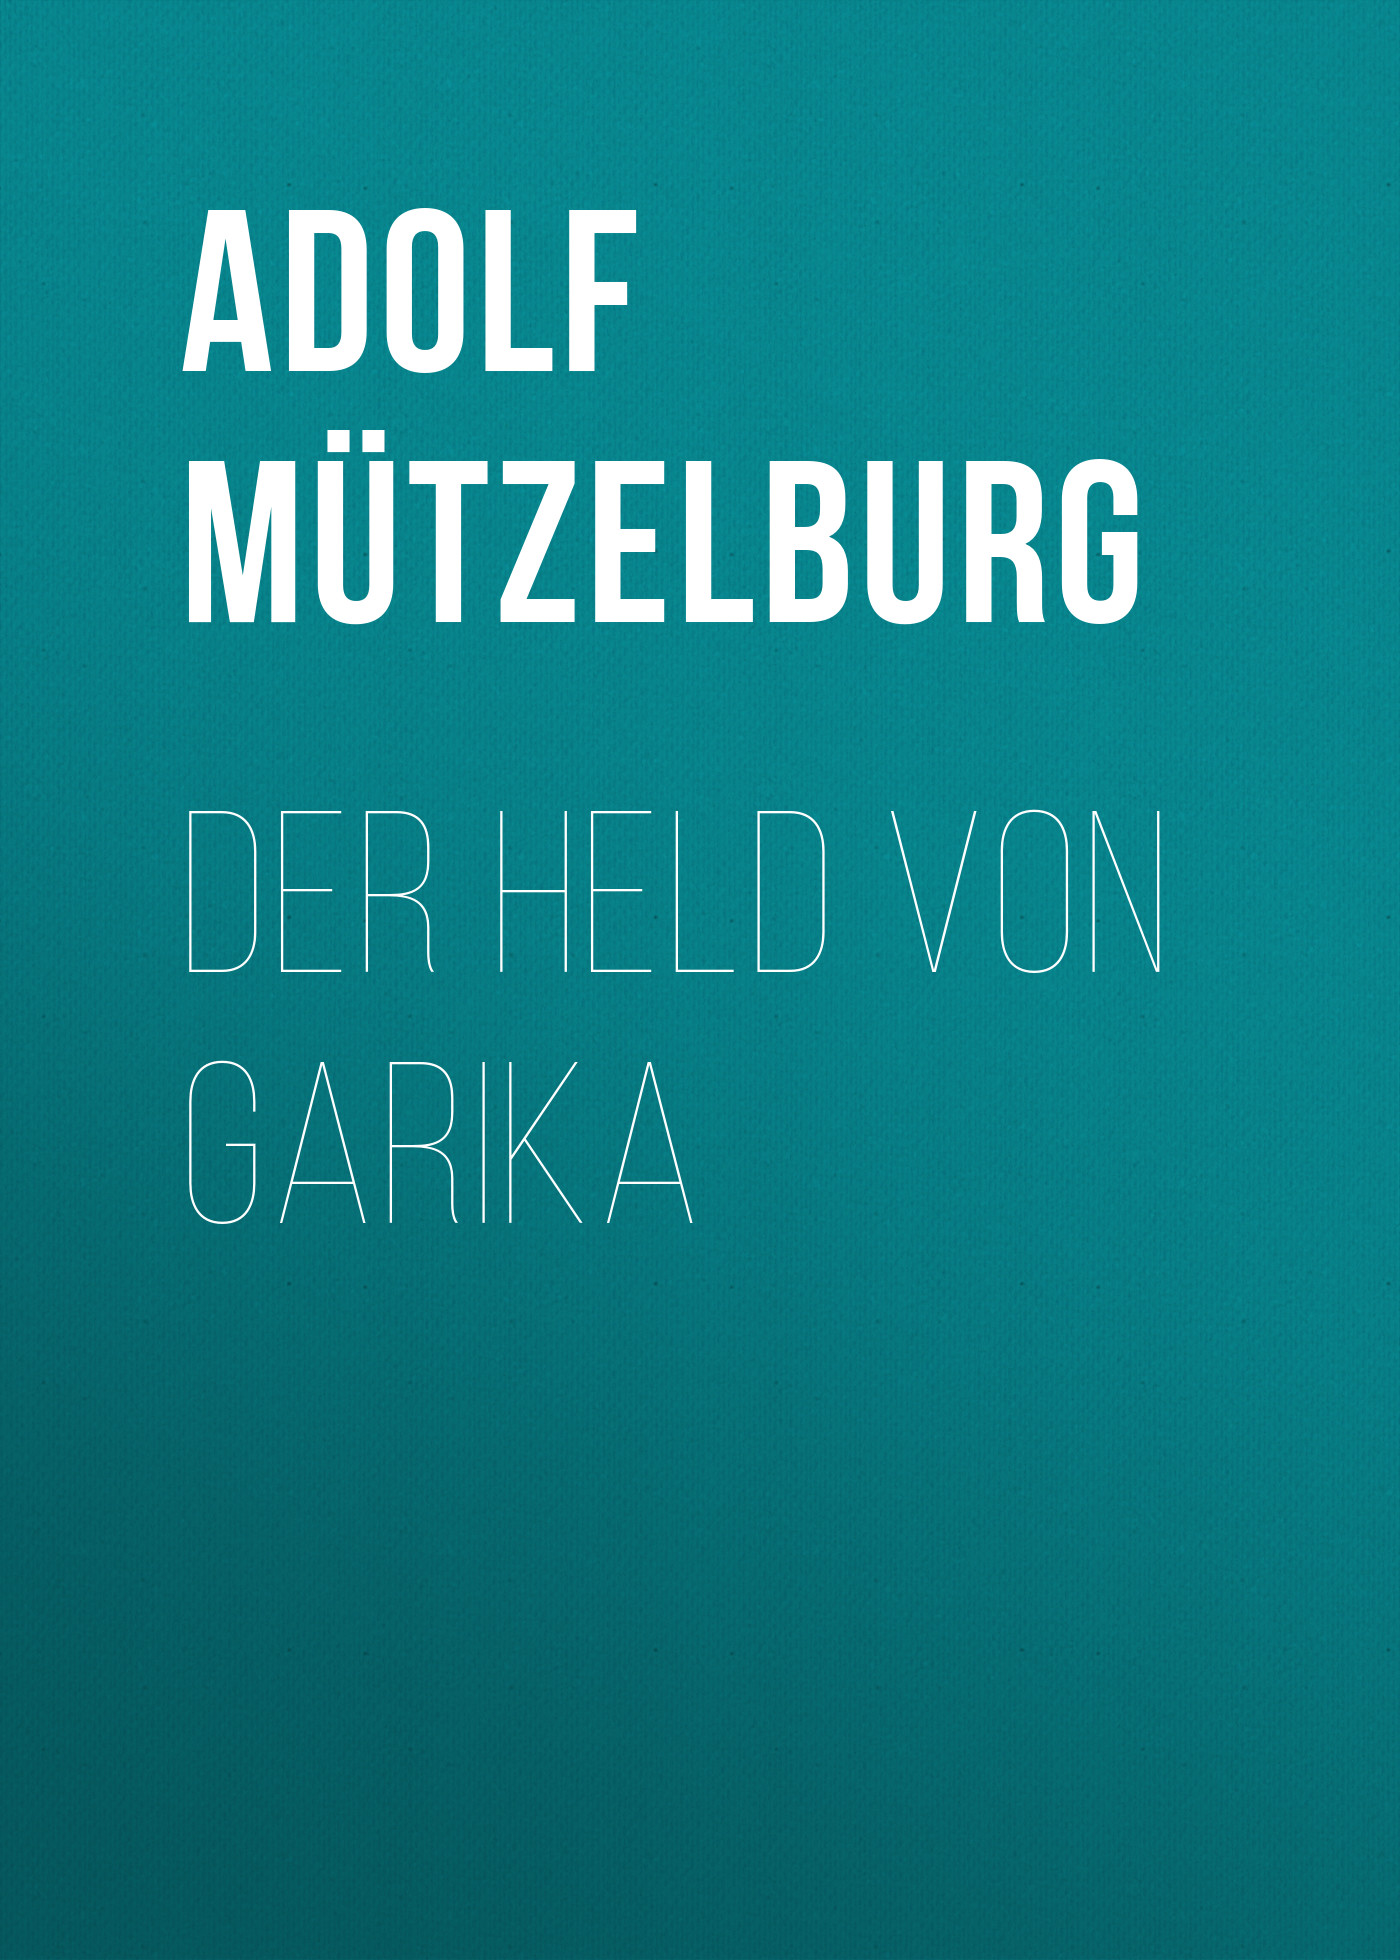 Книга Der Held von Garika из серии , созданная Adolf Mützelburg, может относится к жанру Зарубежная классика. Стоимость электронной книги Der Held von Garika с идентификатором 48632284 составляет 0 руб.